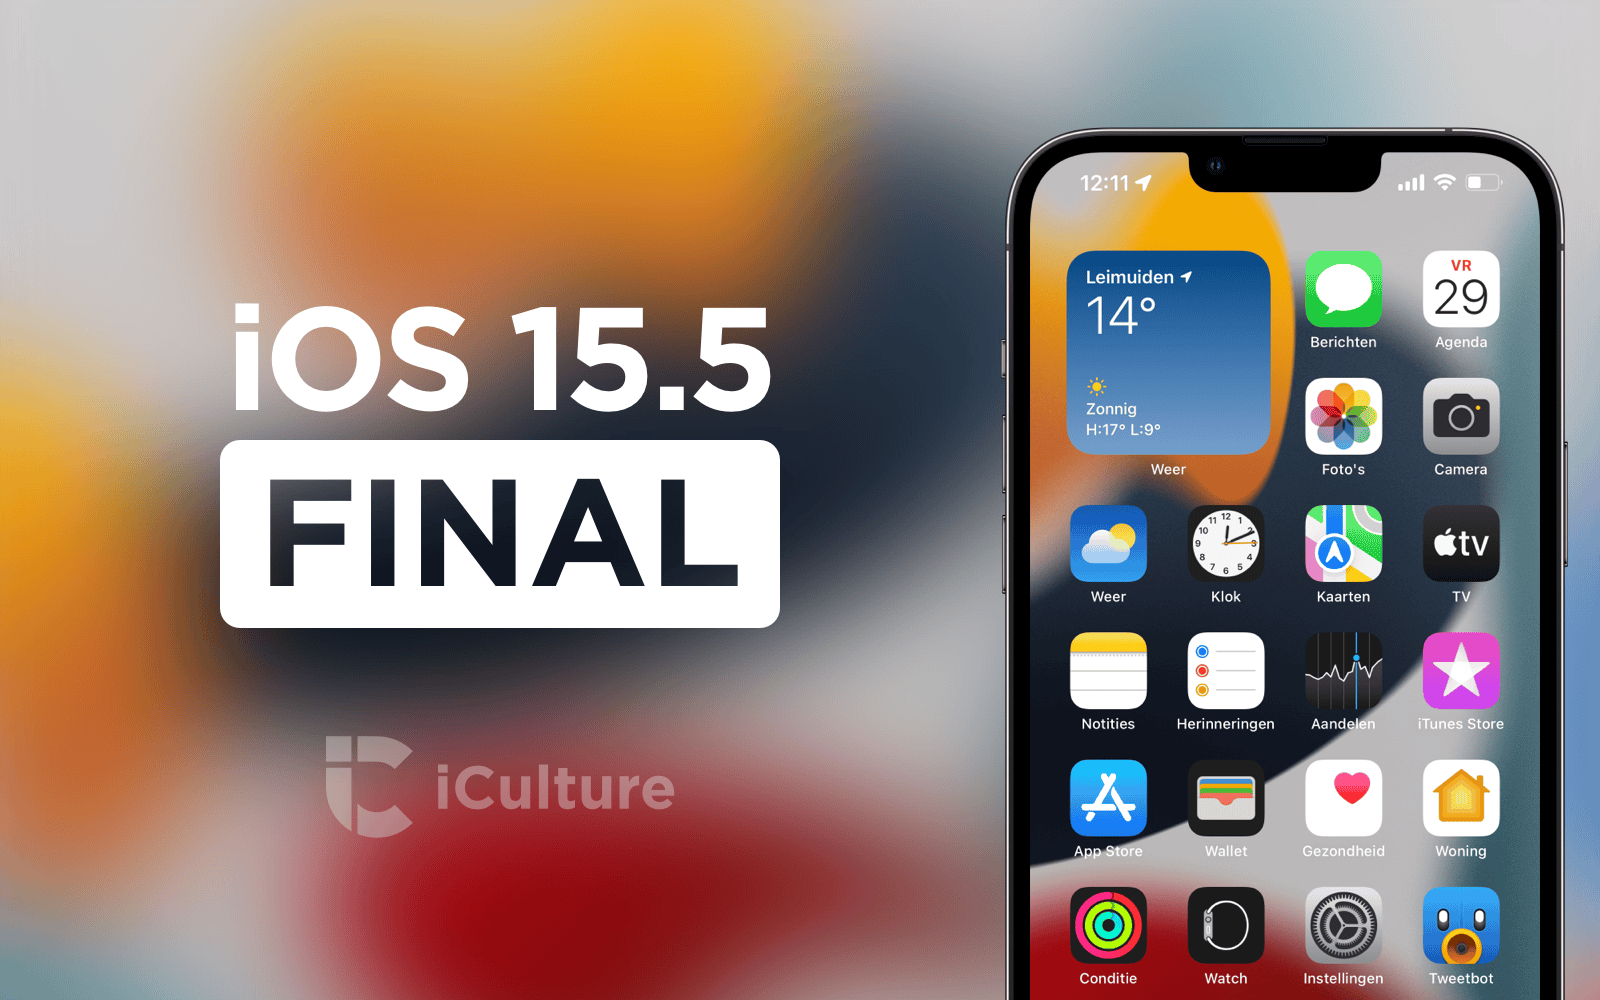 iOS 15.5 final